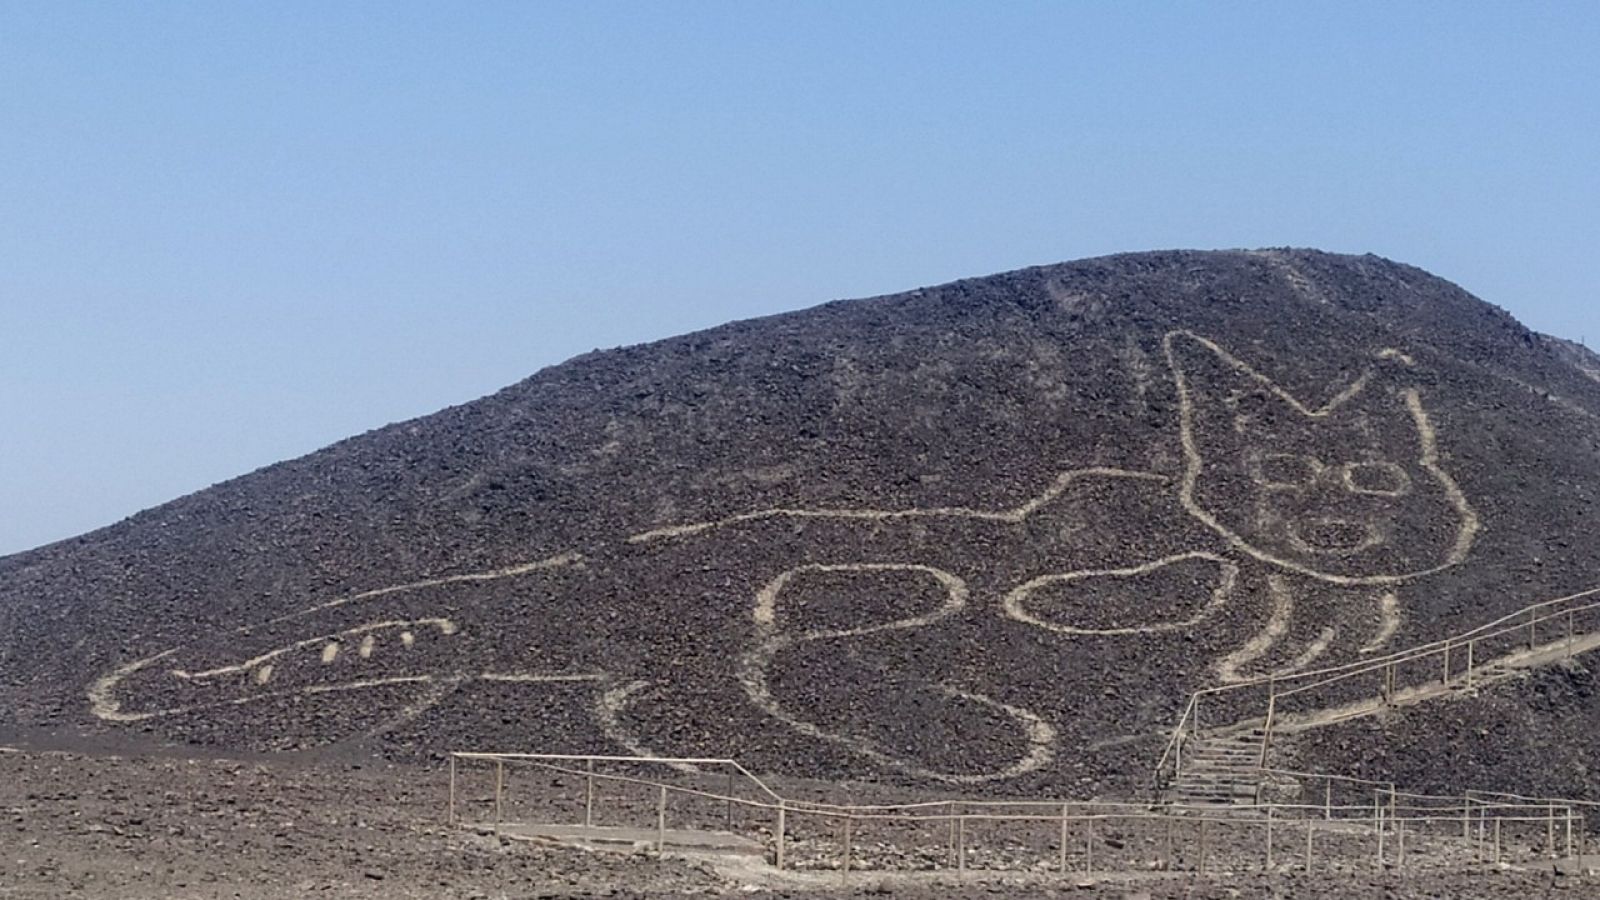 Fotografía cedida por el Ministerio de Cultura de Perú, de la figura de un gato de unos 37 metros de largo reposando sobre una colina arenosa en la Pampa de Nazca.